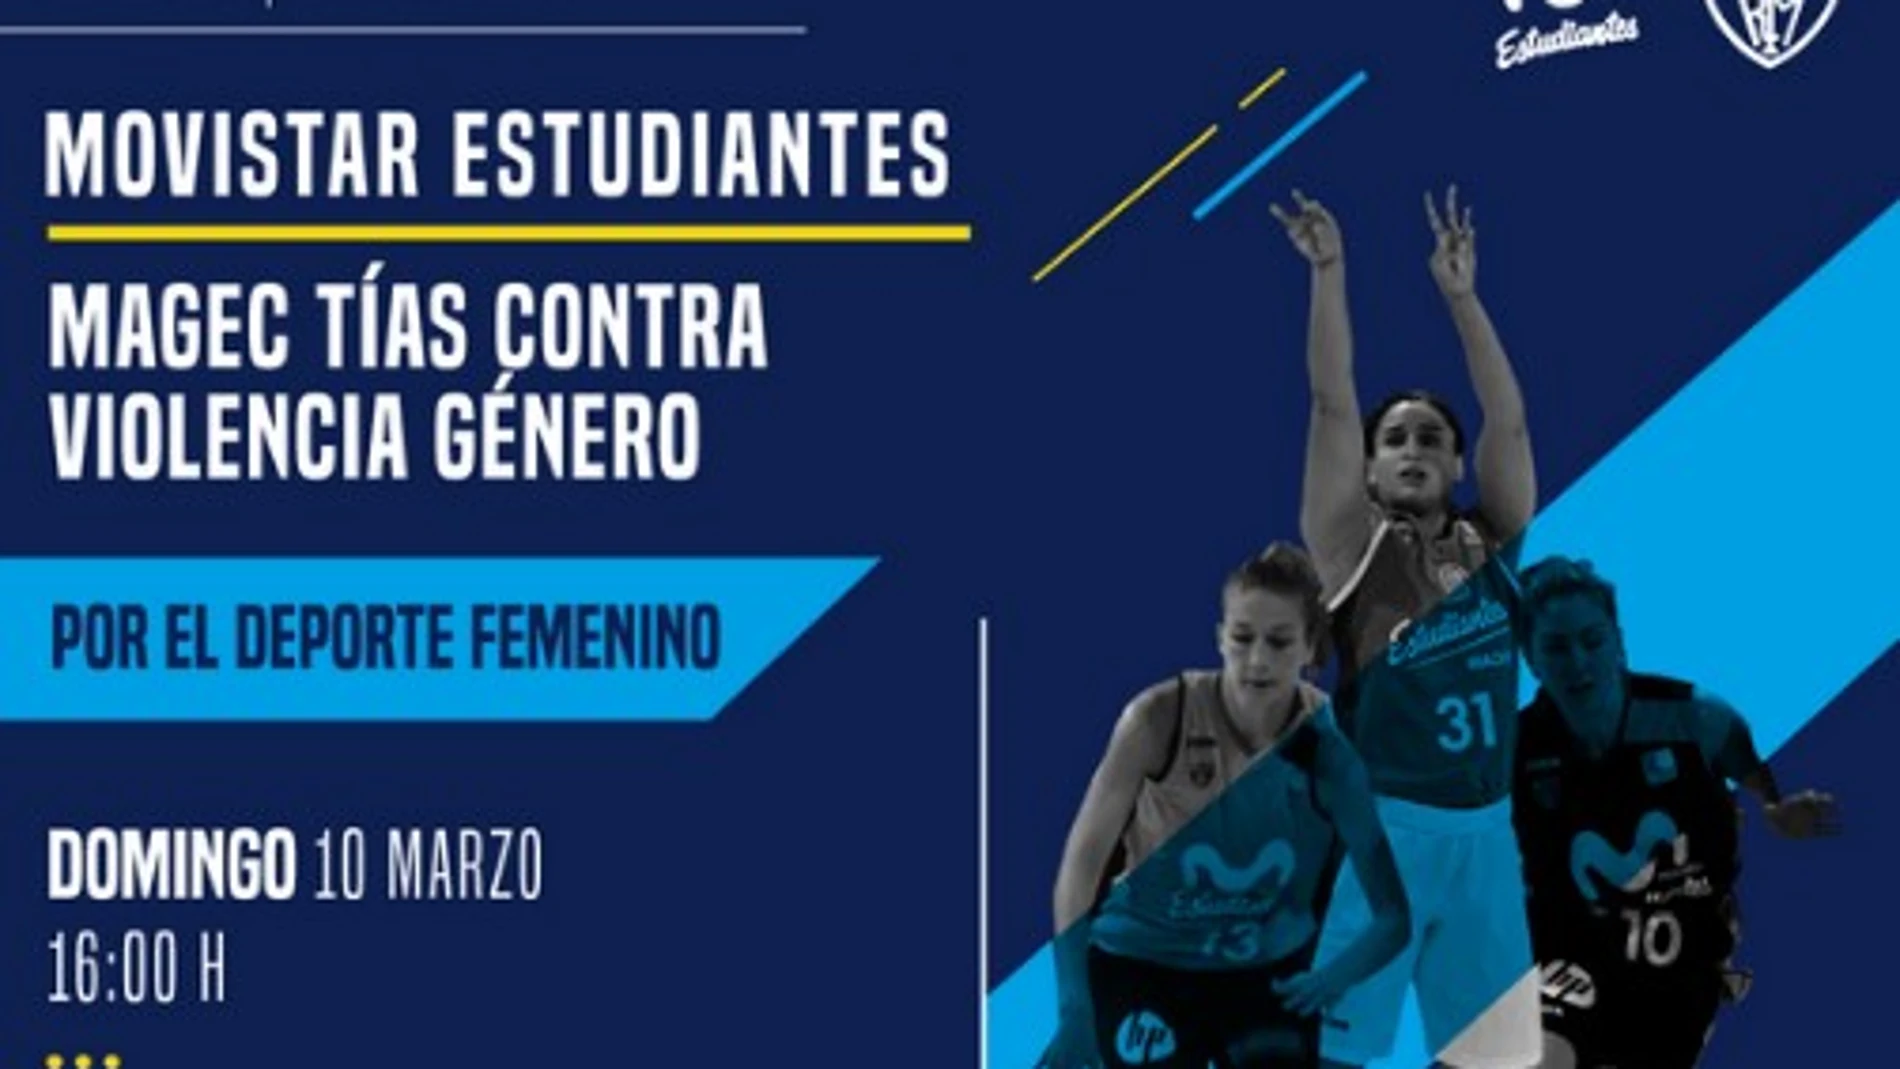 Onda Cero, Europa FM y Melodía FM, a por el récord de asistencia a un partido de baloncesto femenino